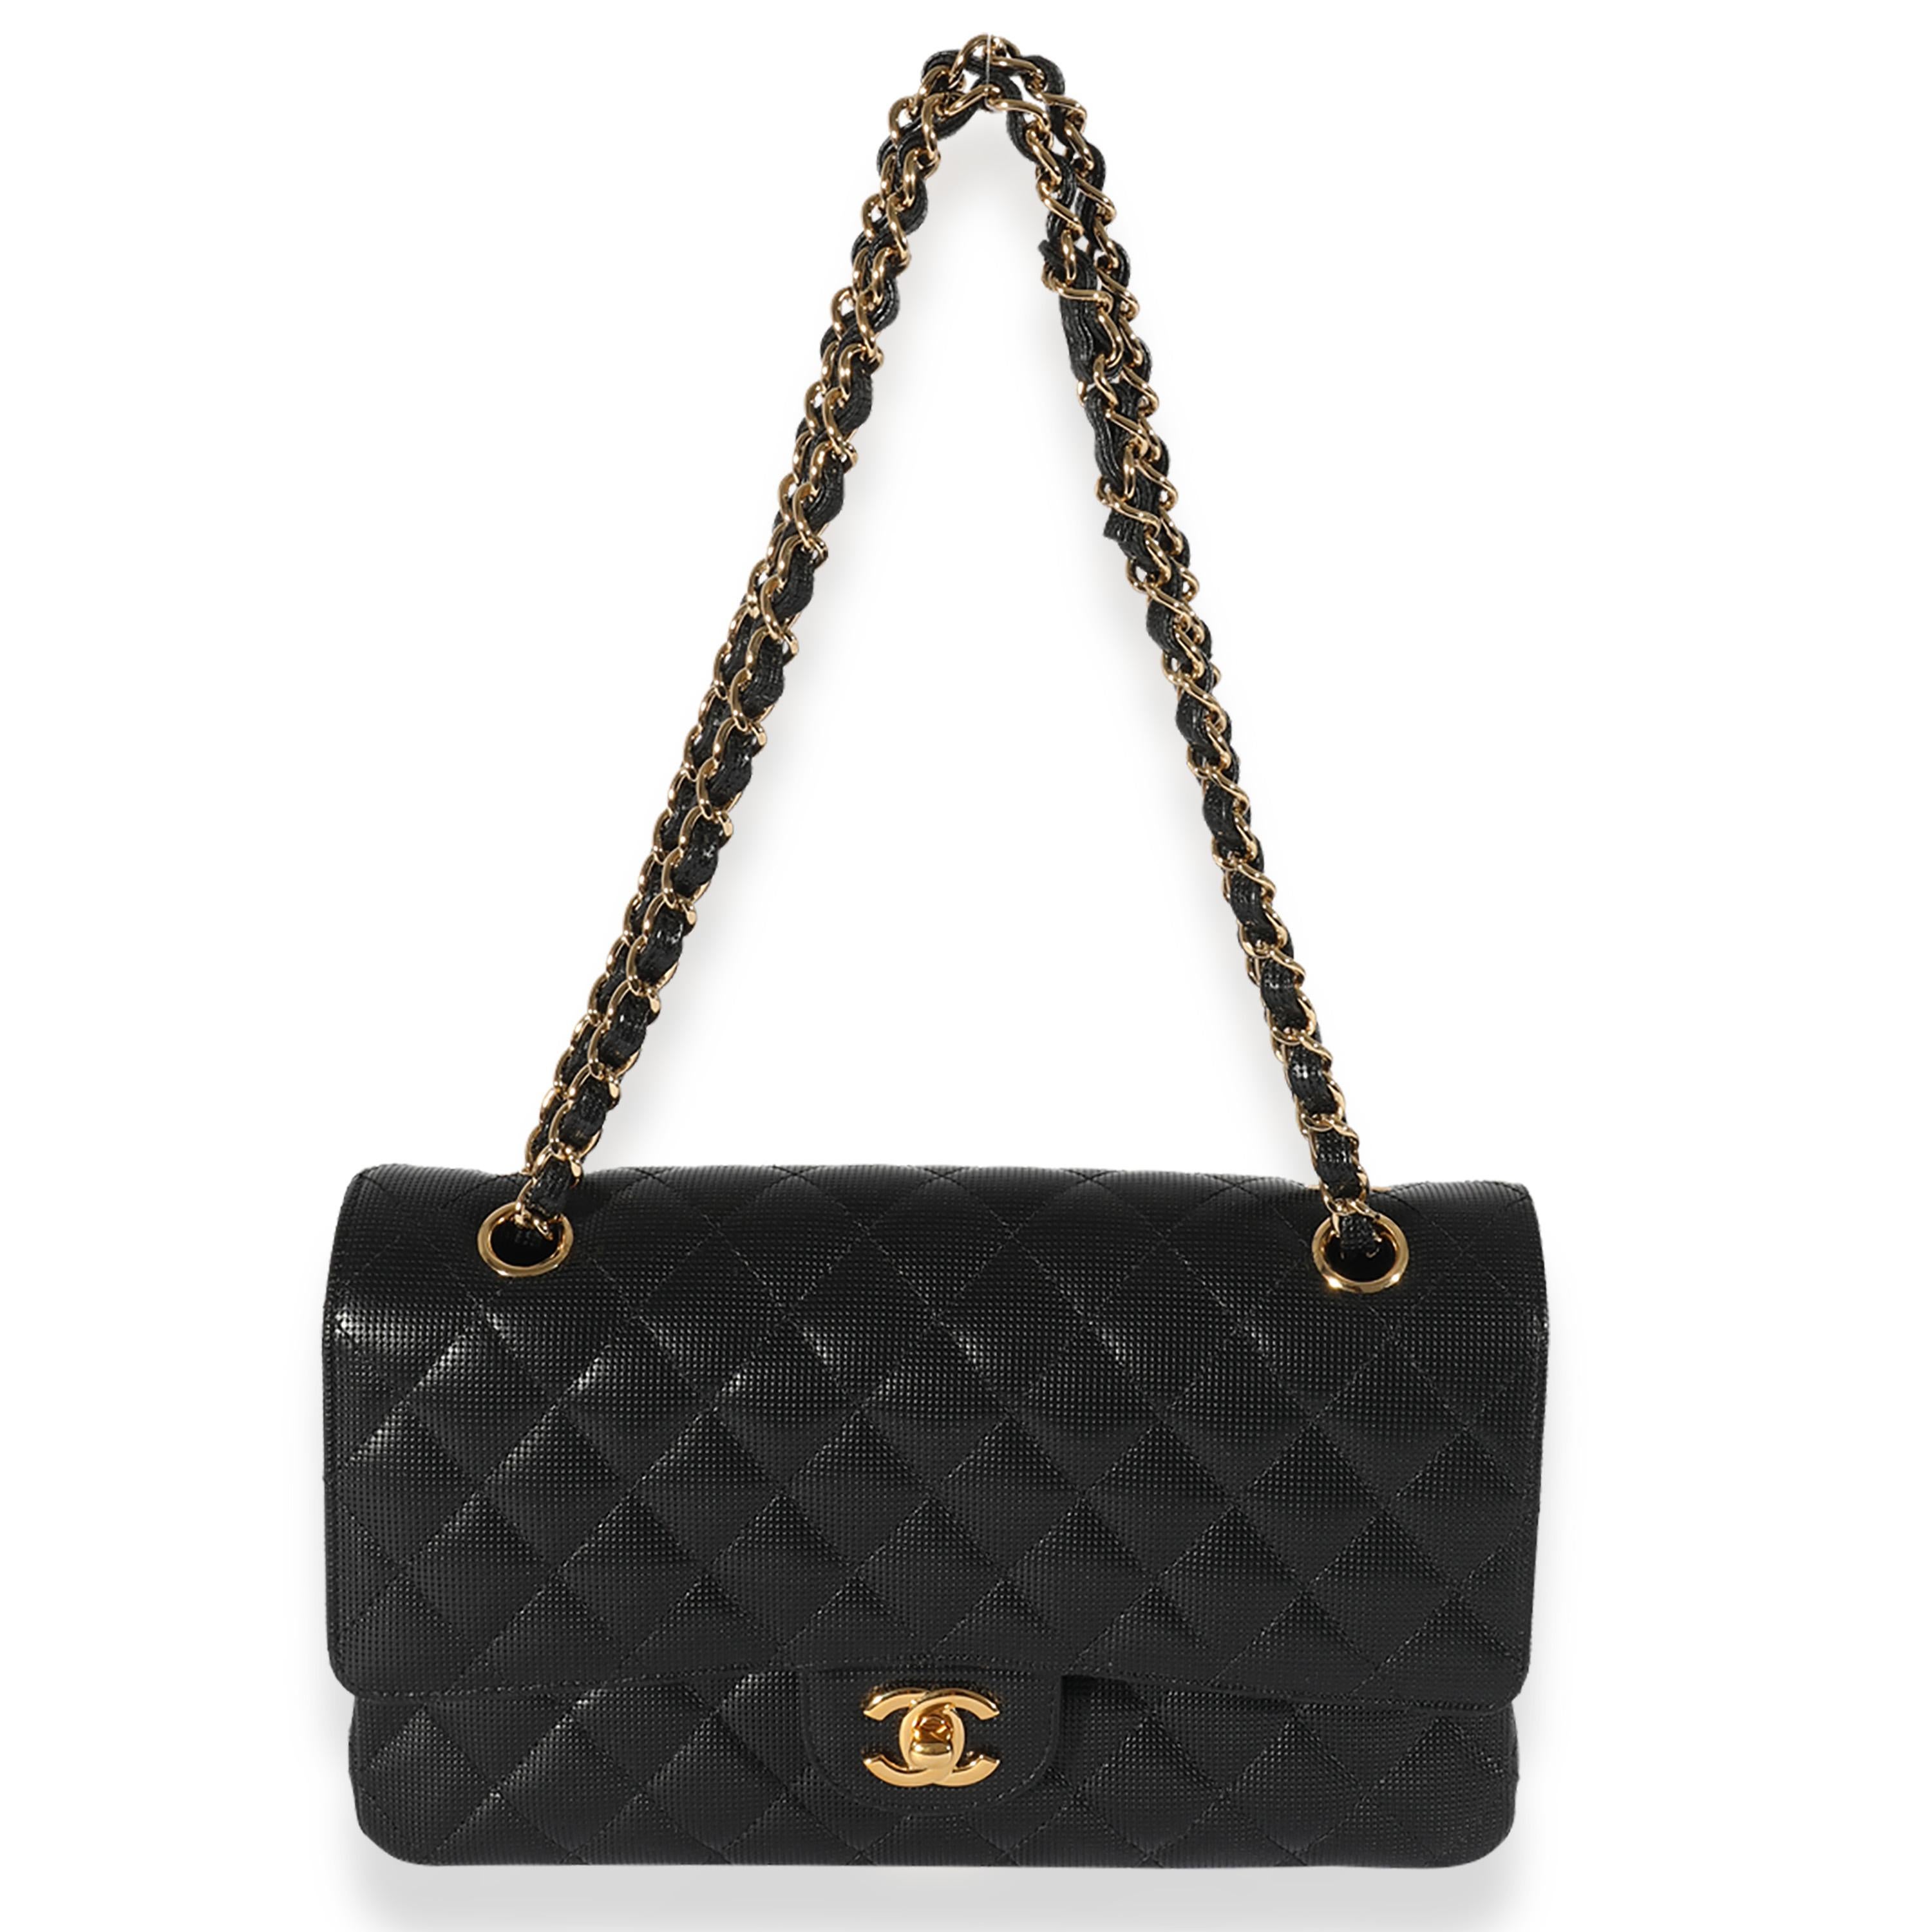 Auflistung Titel: Chanel Black Quilted Perforated Lambskin Medium Classic Double Flap Bag
SKU: 125924

Zustand: Gebraucht 
Beschreibung des Zustands: Die Überschlagtasche von Chanel ist ein zeitloser Klassiker, der nie aus der Mode kommt. Sie stammt